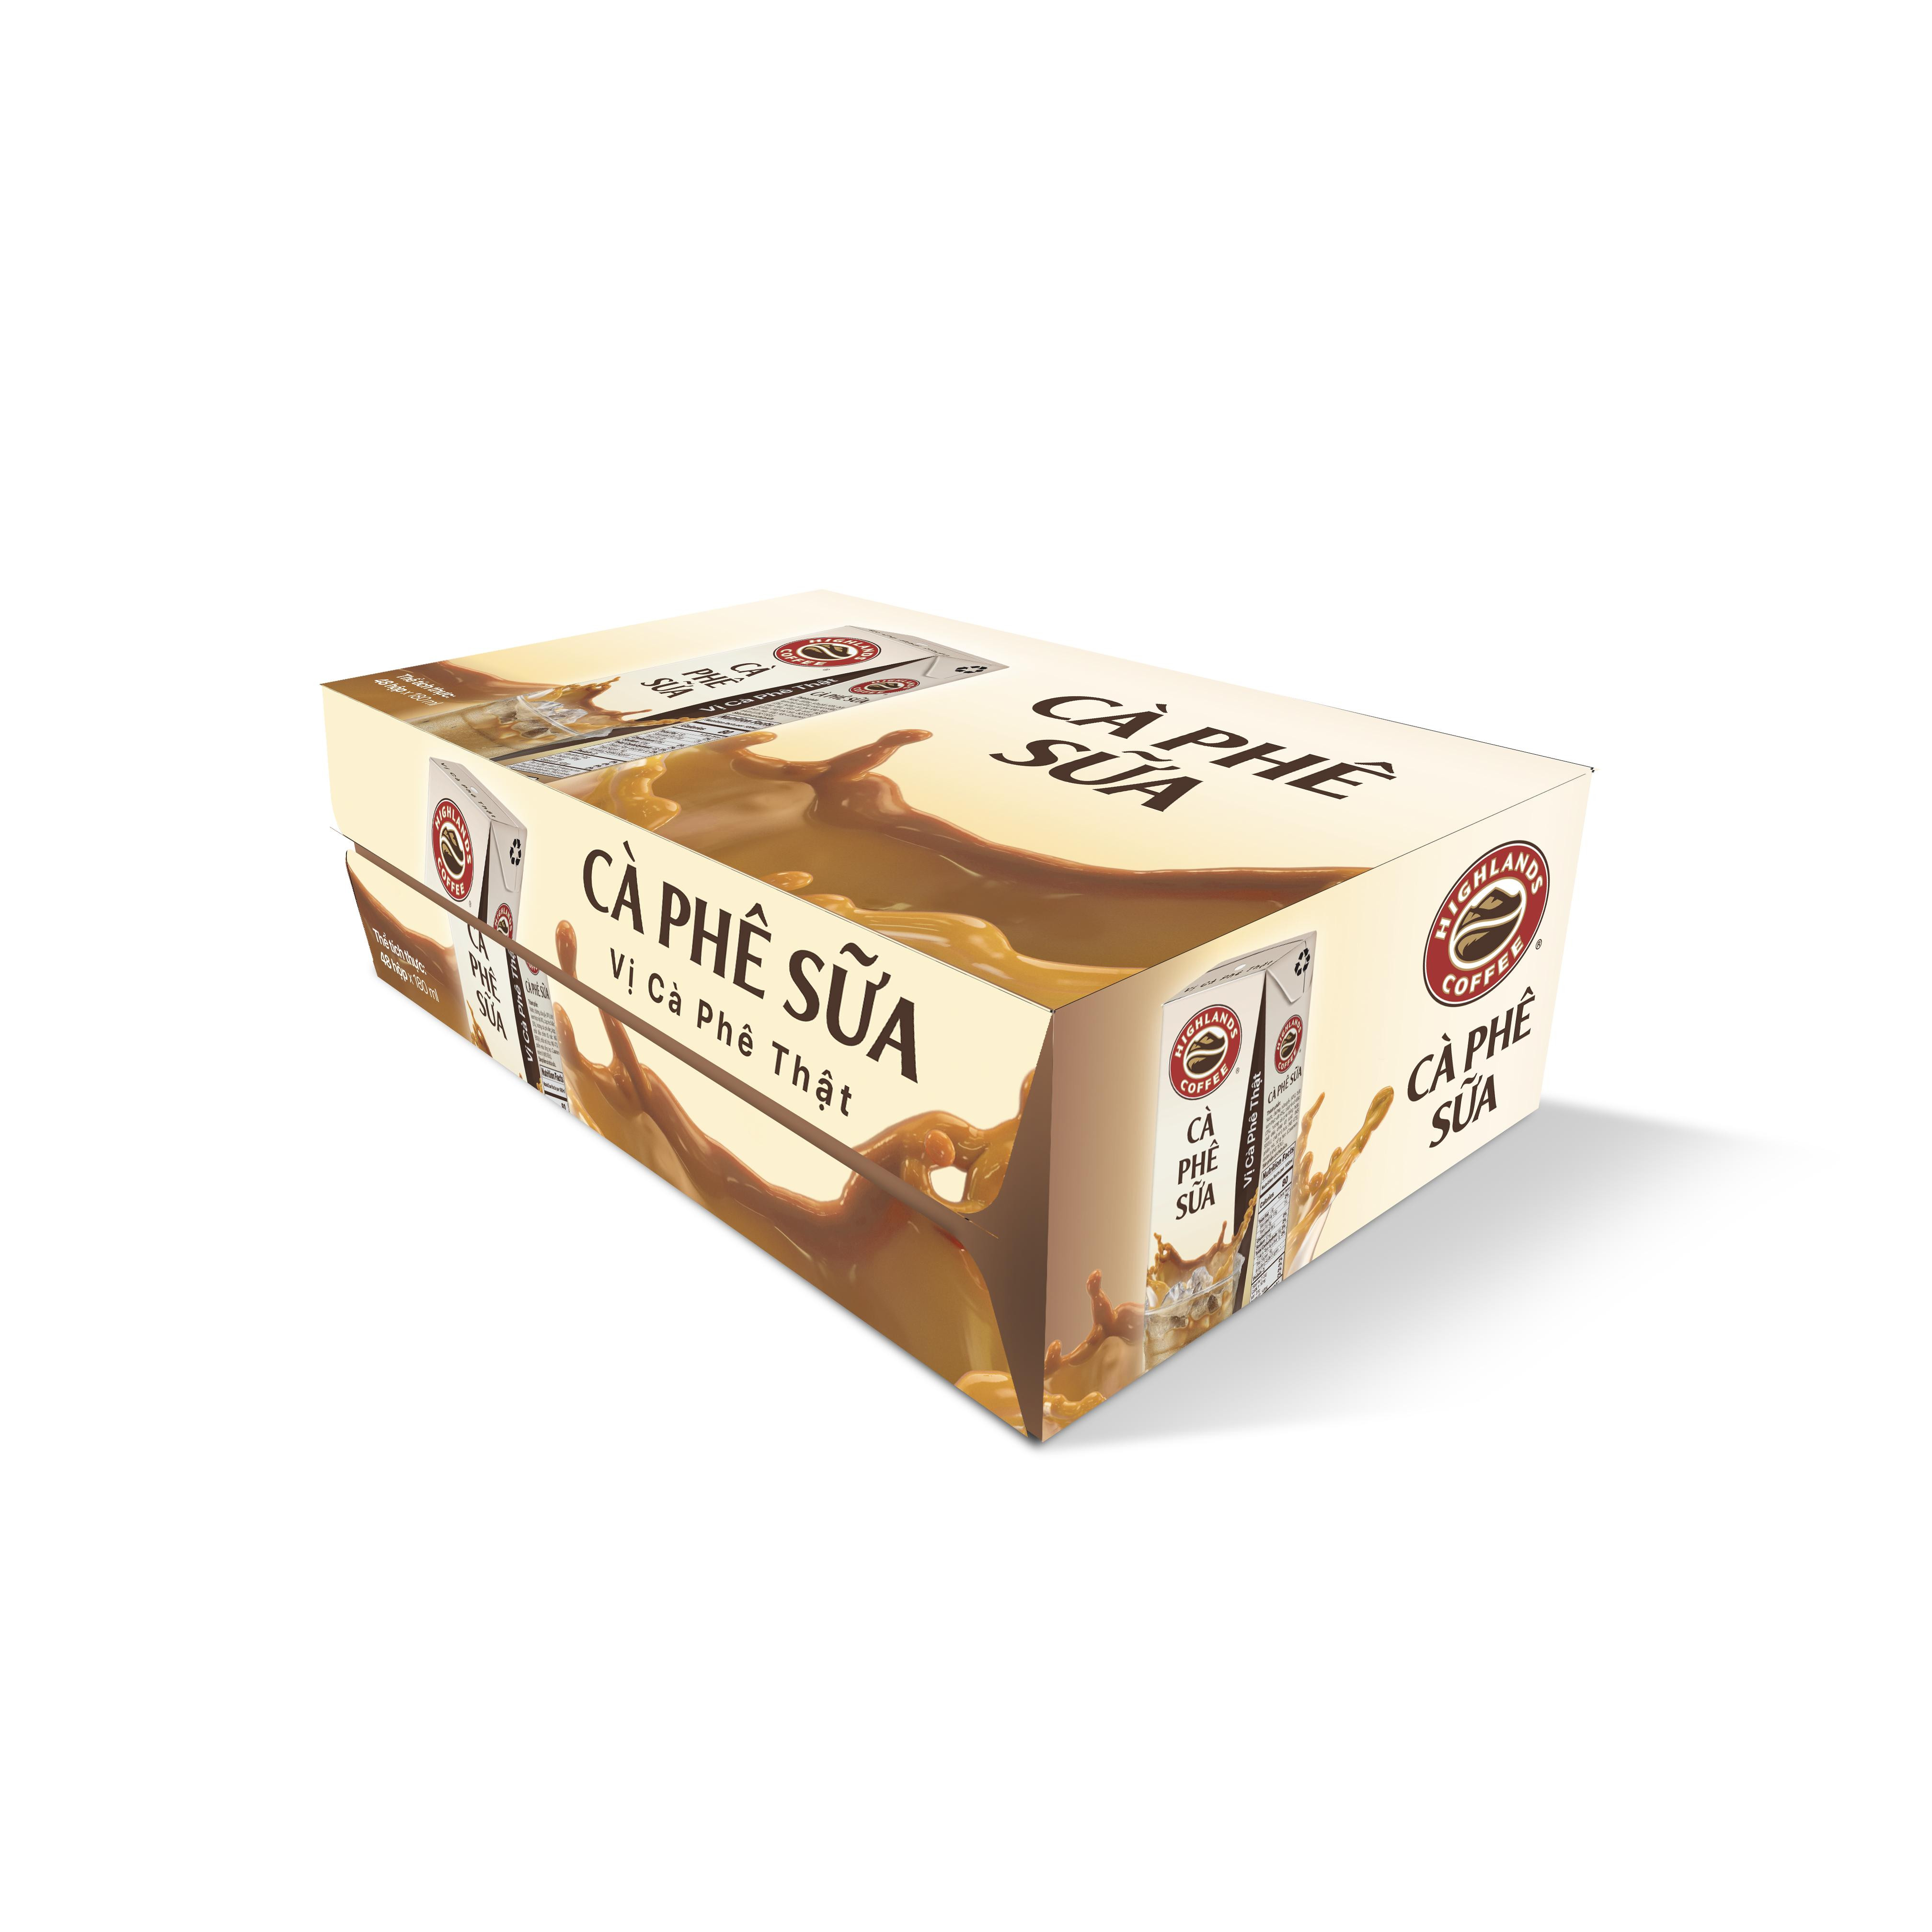 Hình ảnh Thùng 48 hộp Cà phê Sữa Highlands Coffee Tetra pack (180ml /hộp)